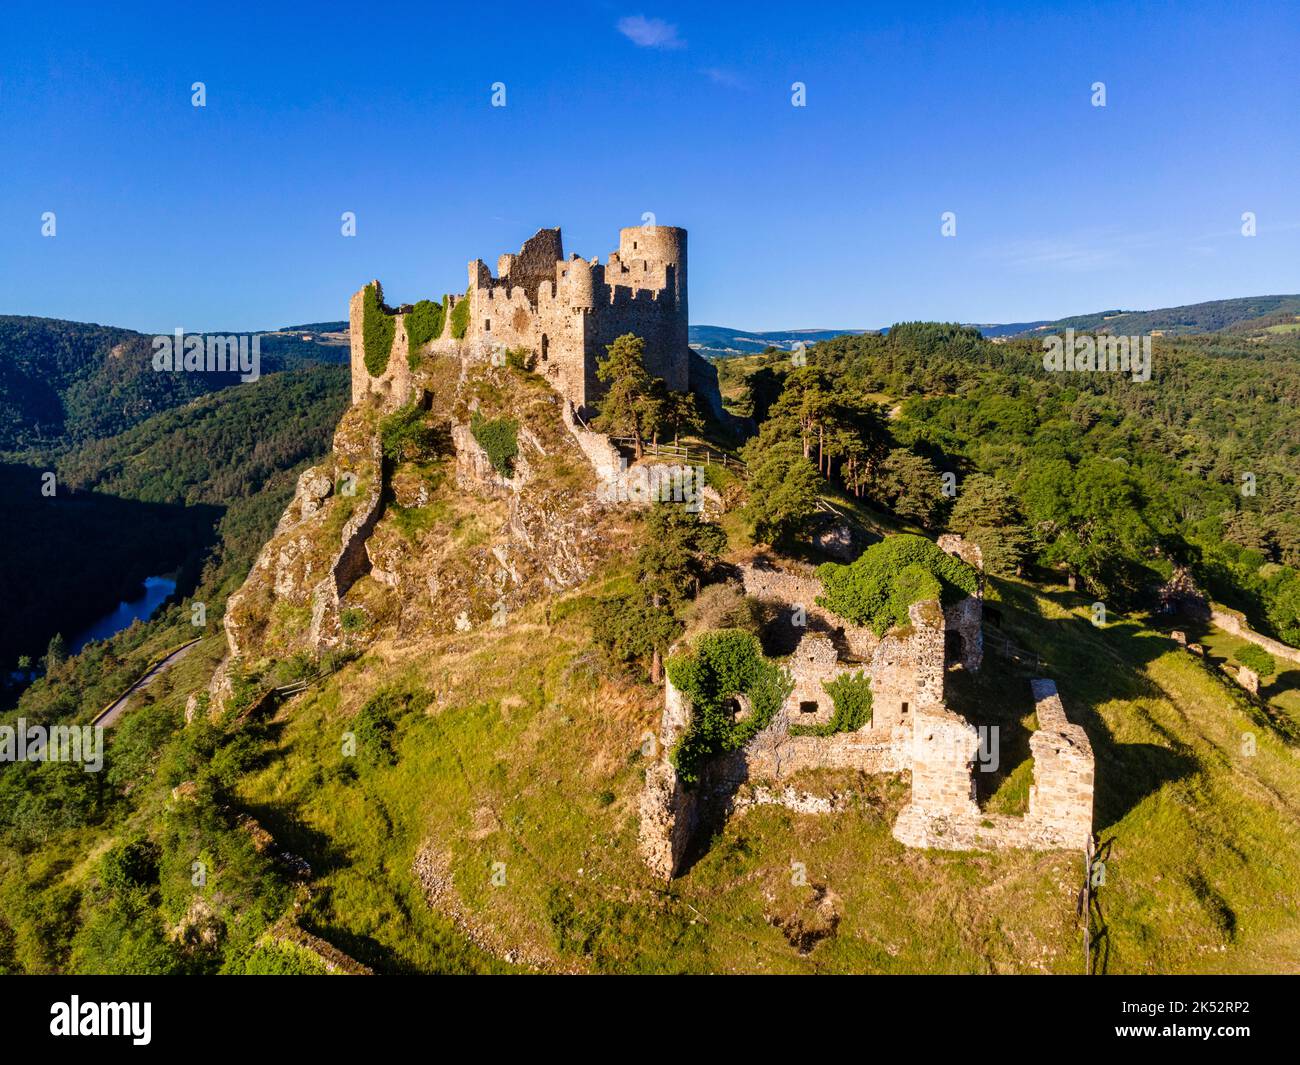 Francia, Loira, Sail sous Couzan, Chateau de Couzan, fortezza medievale del 11th ° secolo costruito su uno sperone roccioso, Monts du Forez (vista aerea) Foto Stock